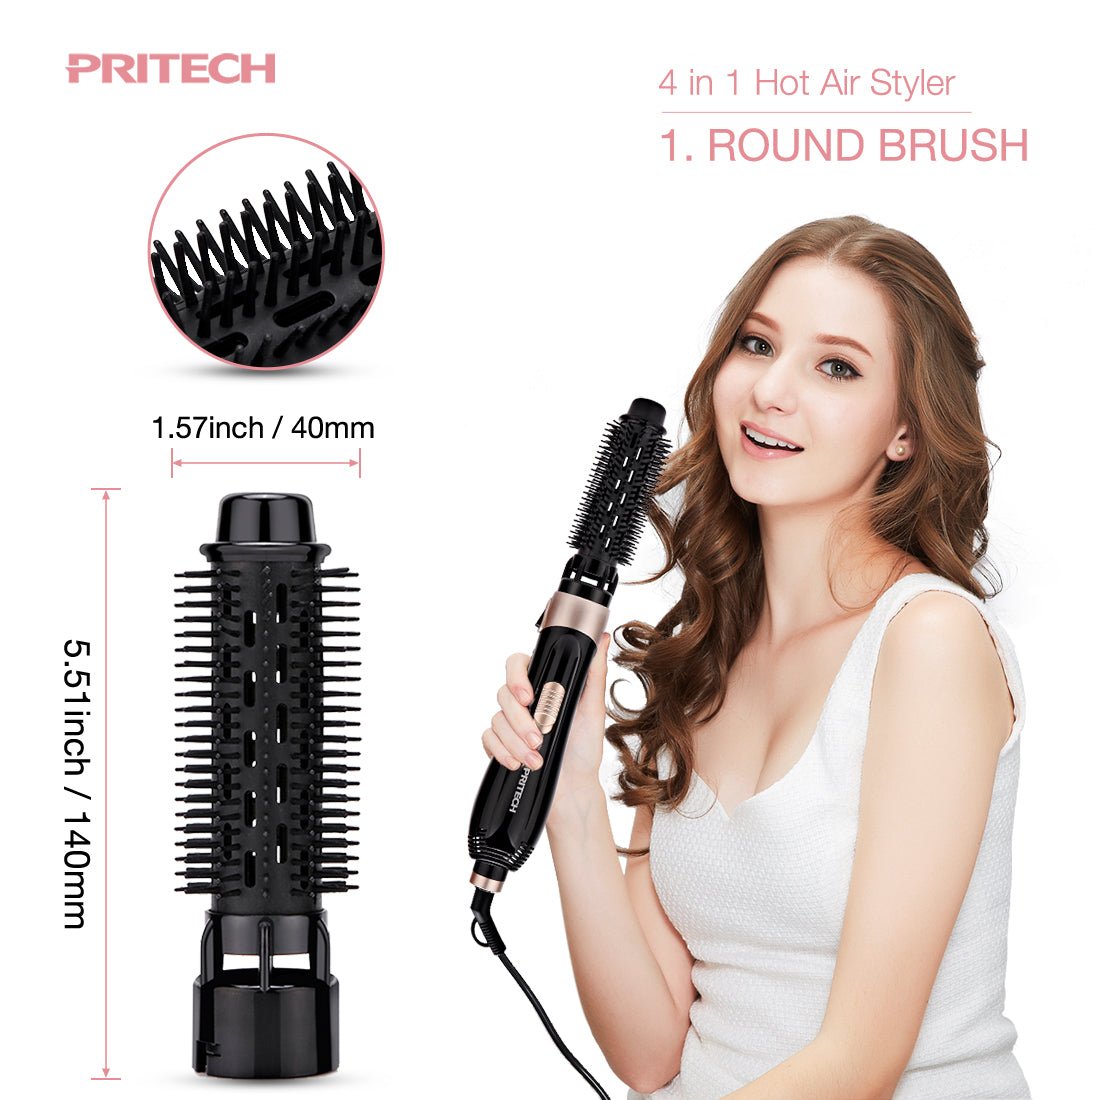 4 in 1 Hair Dryer Brush - HS-729